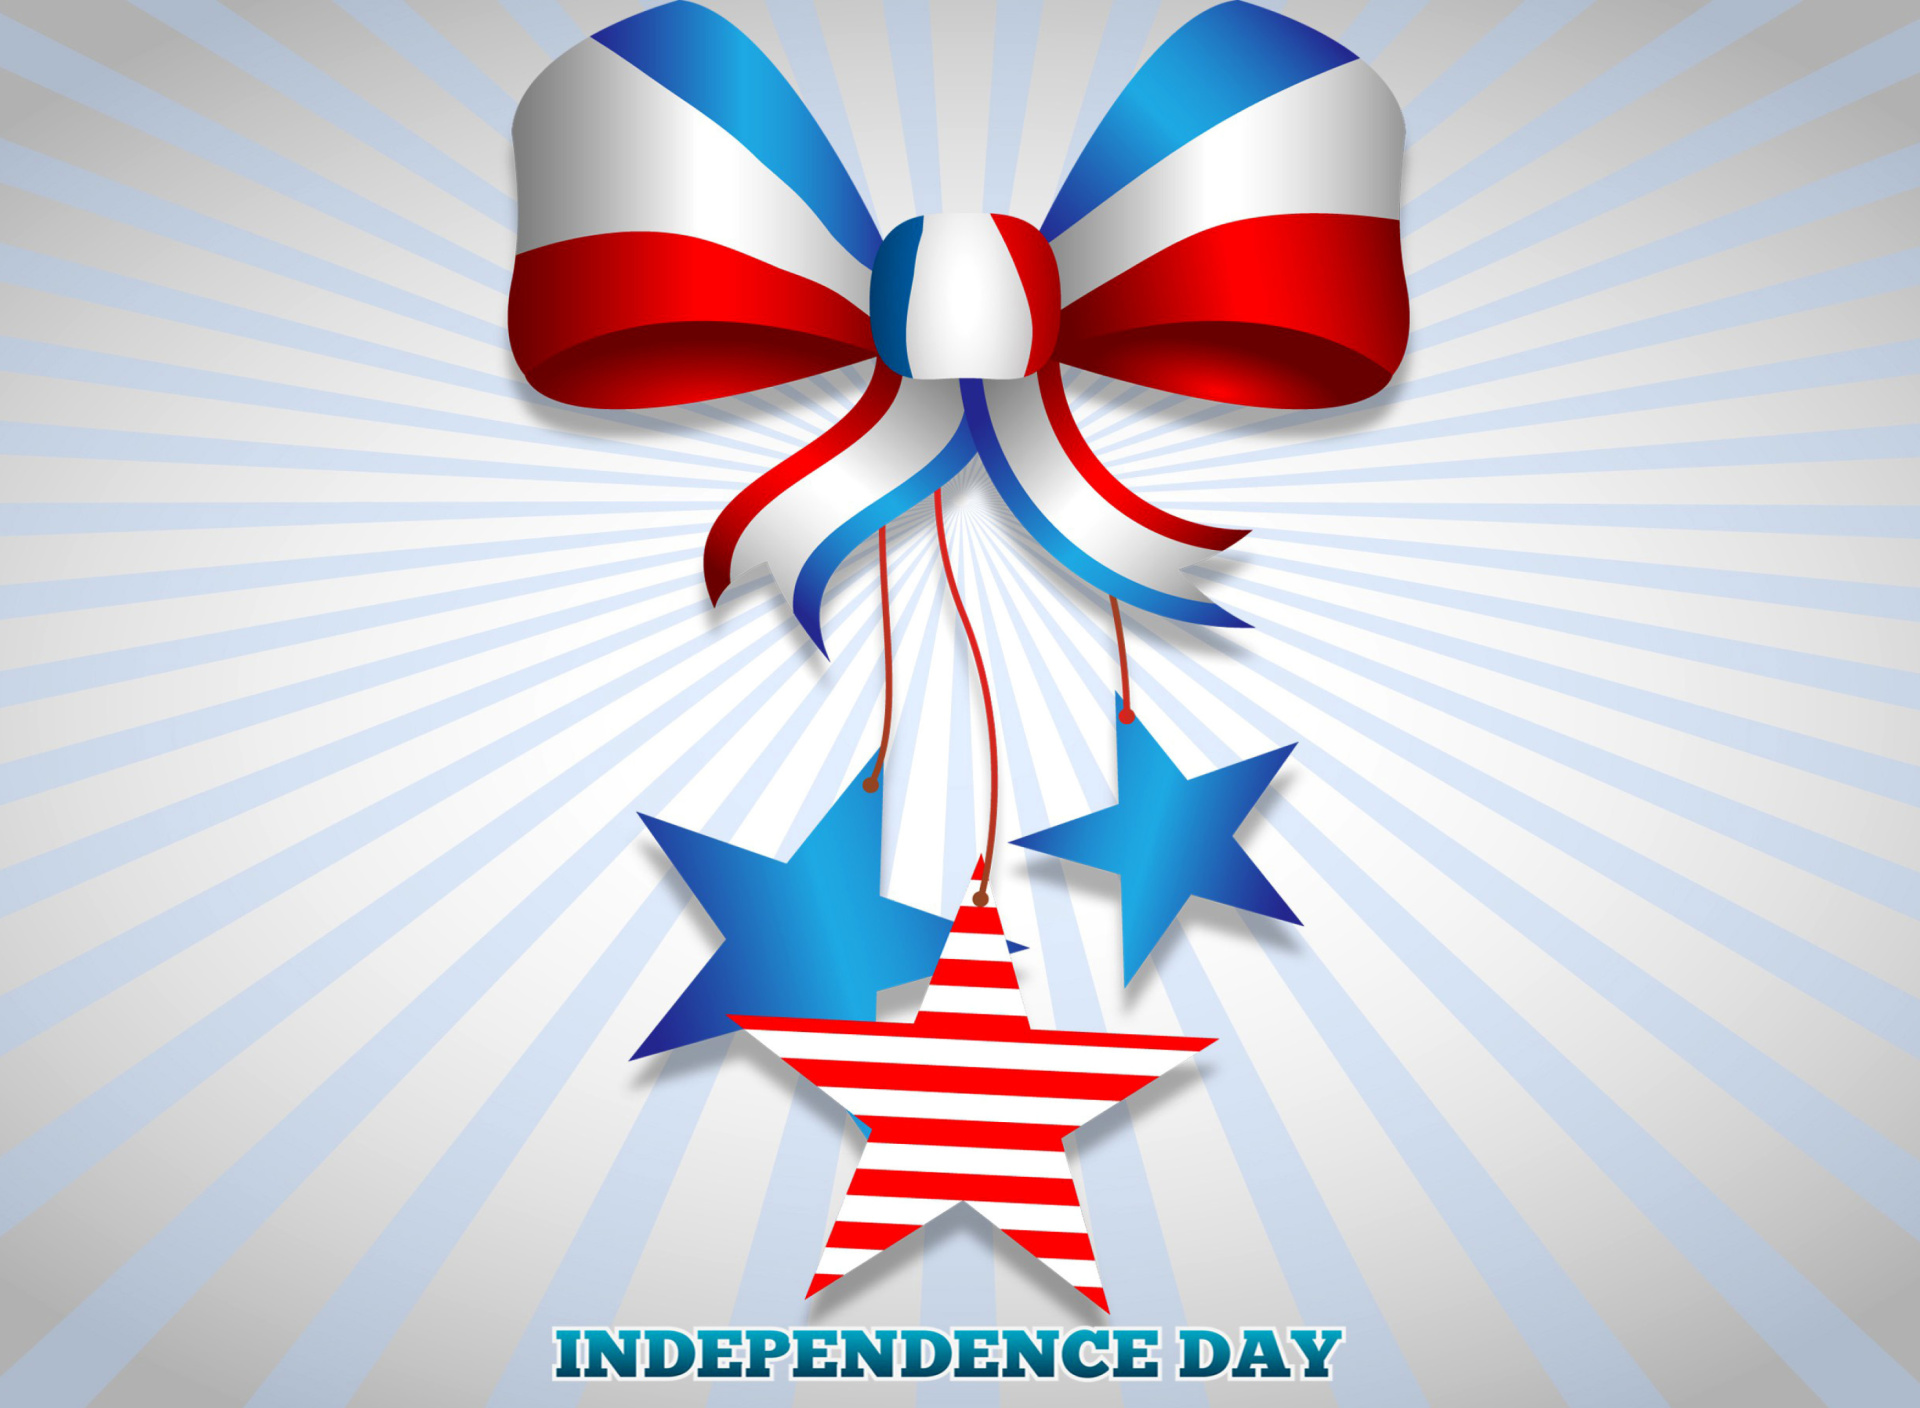 Sfondi United states america Idependence day 4th july 1920x1408